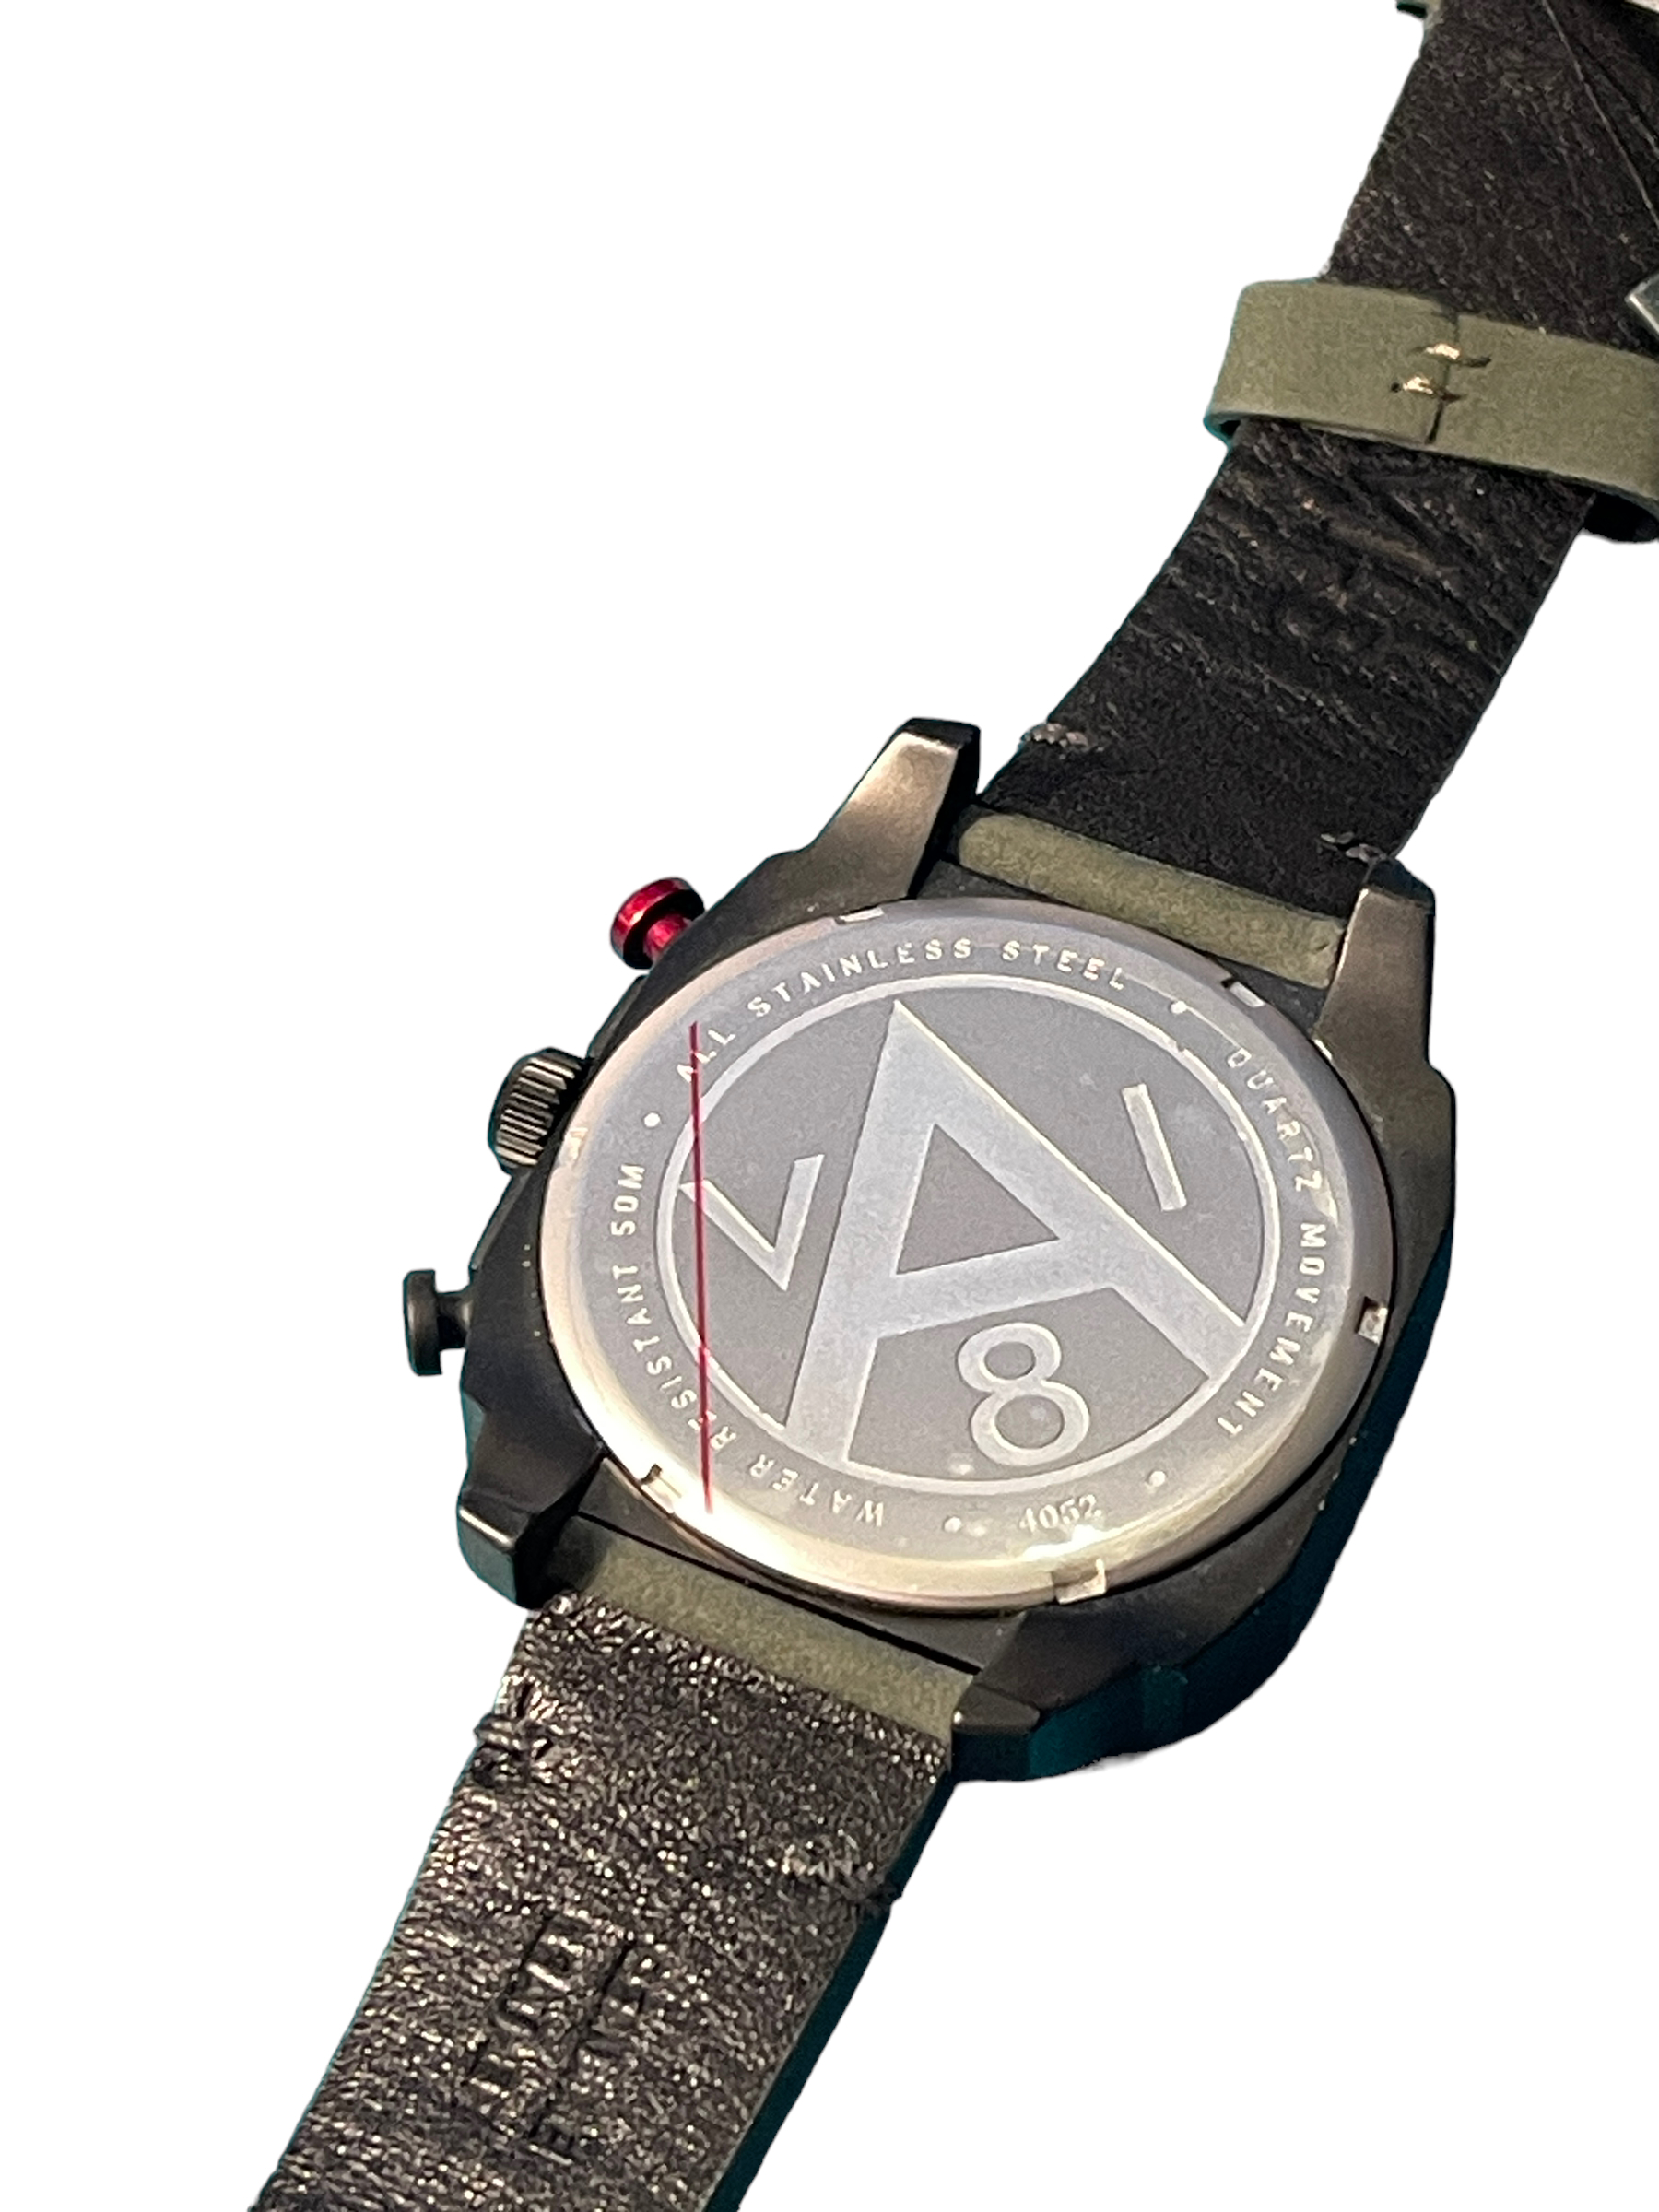 Av-8 men's aviation dial instrument watch - Image 2 of 4